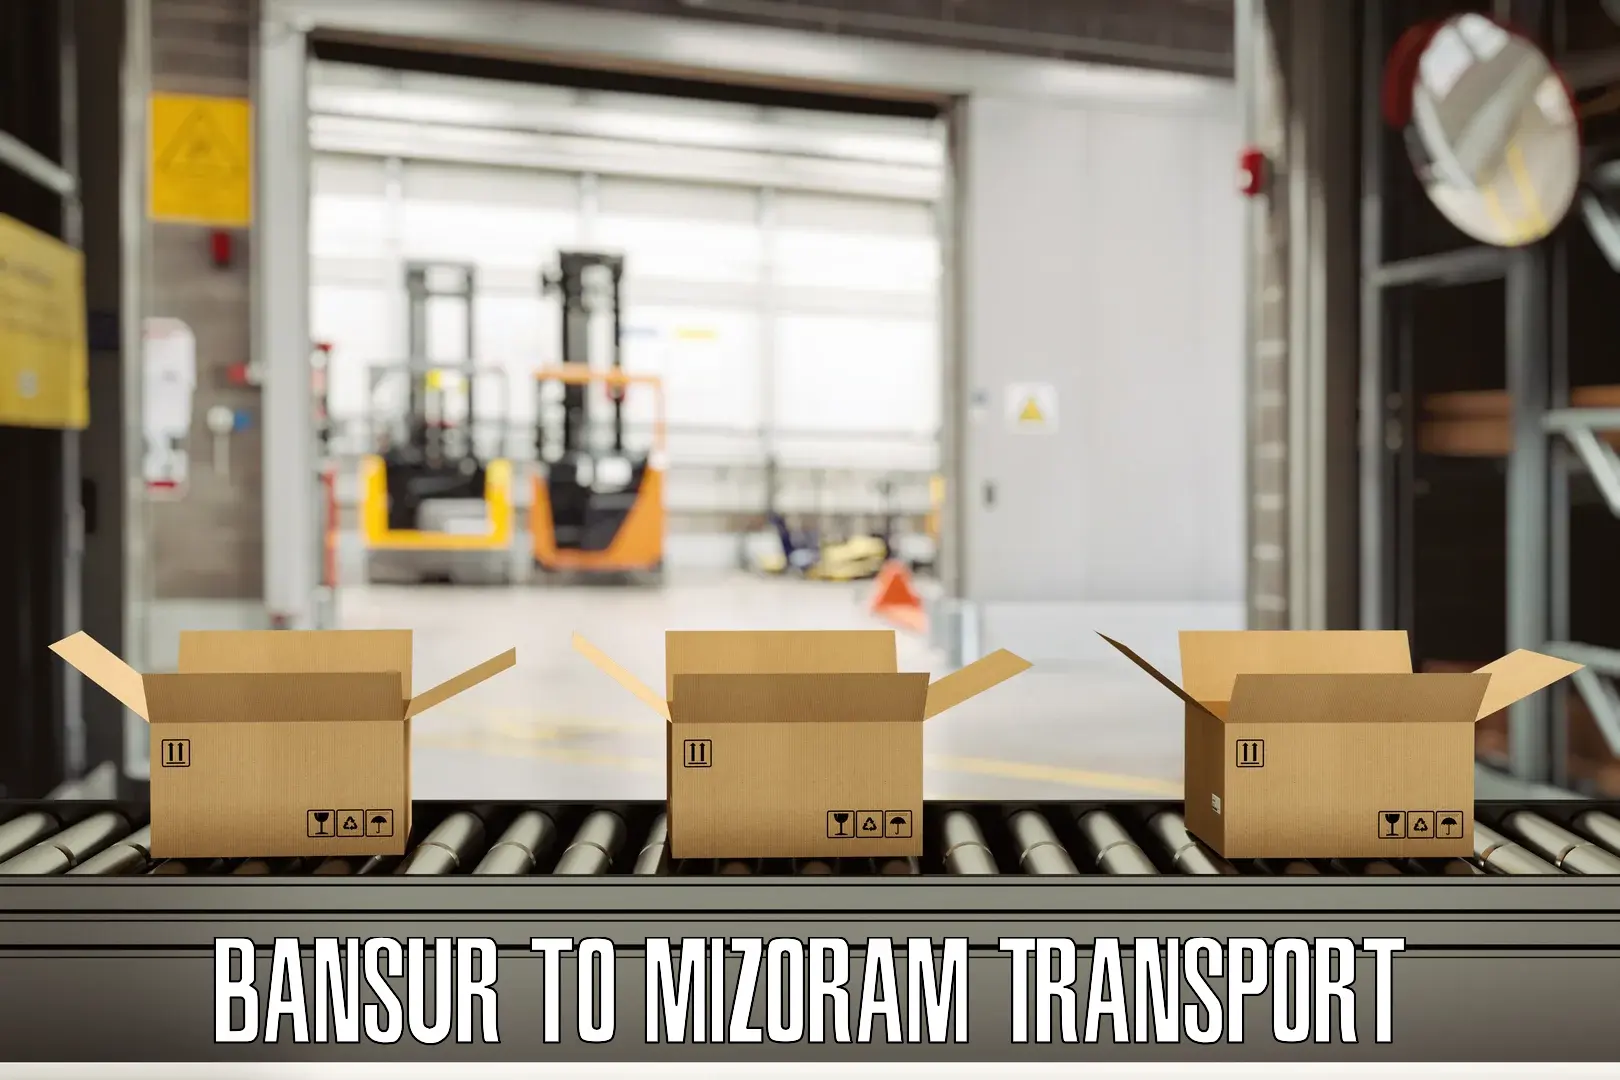 Online transport booking Bansur to Mizoram